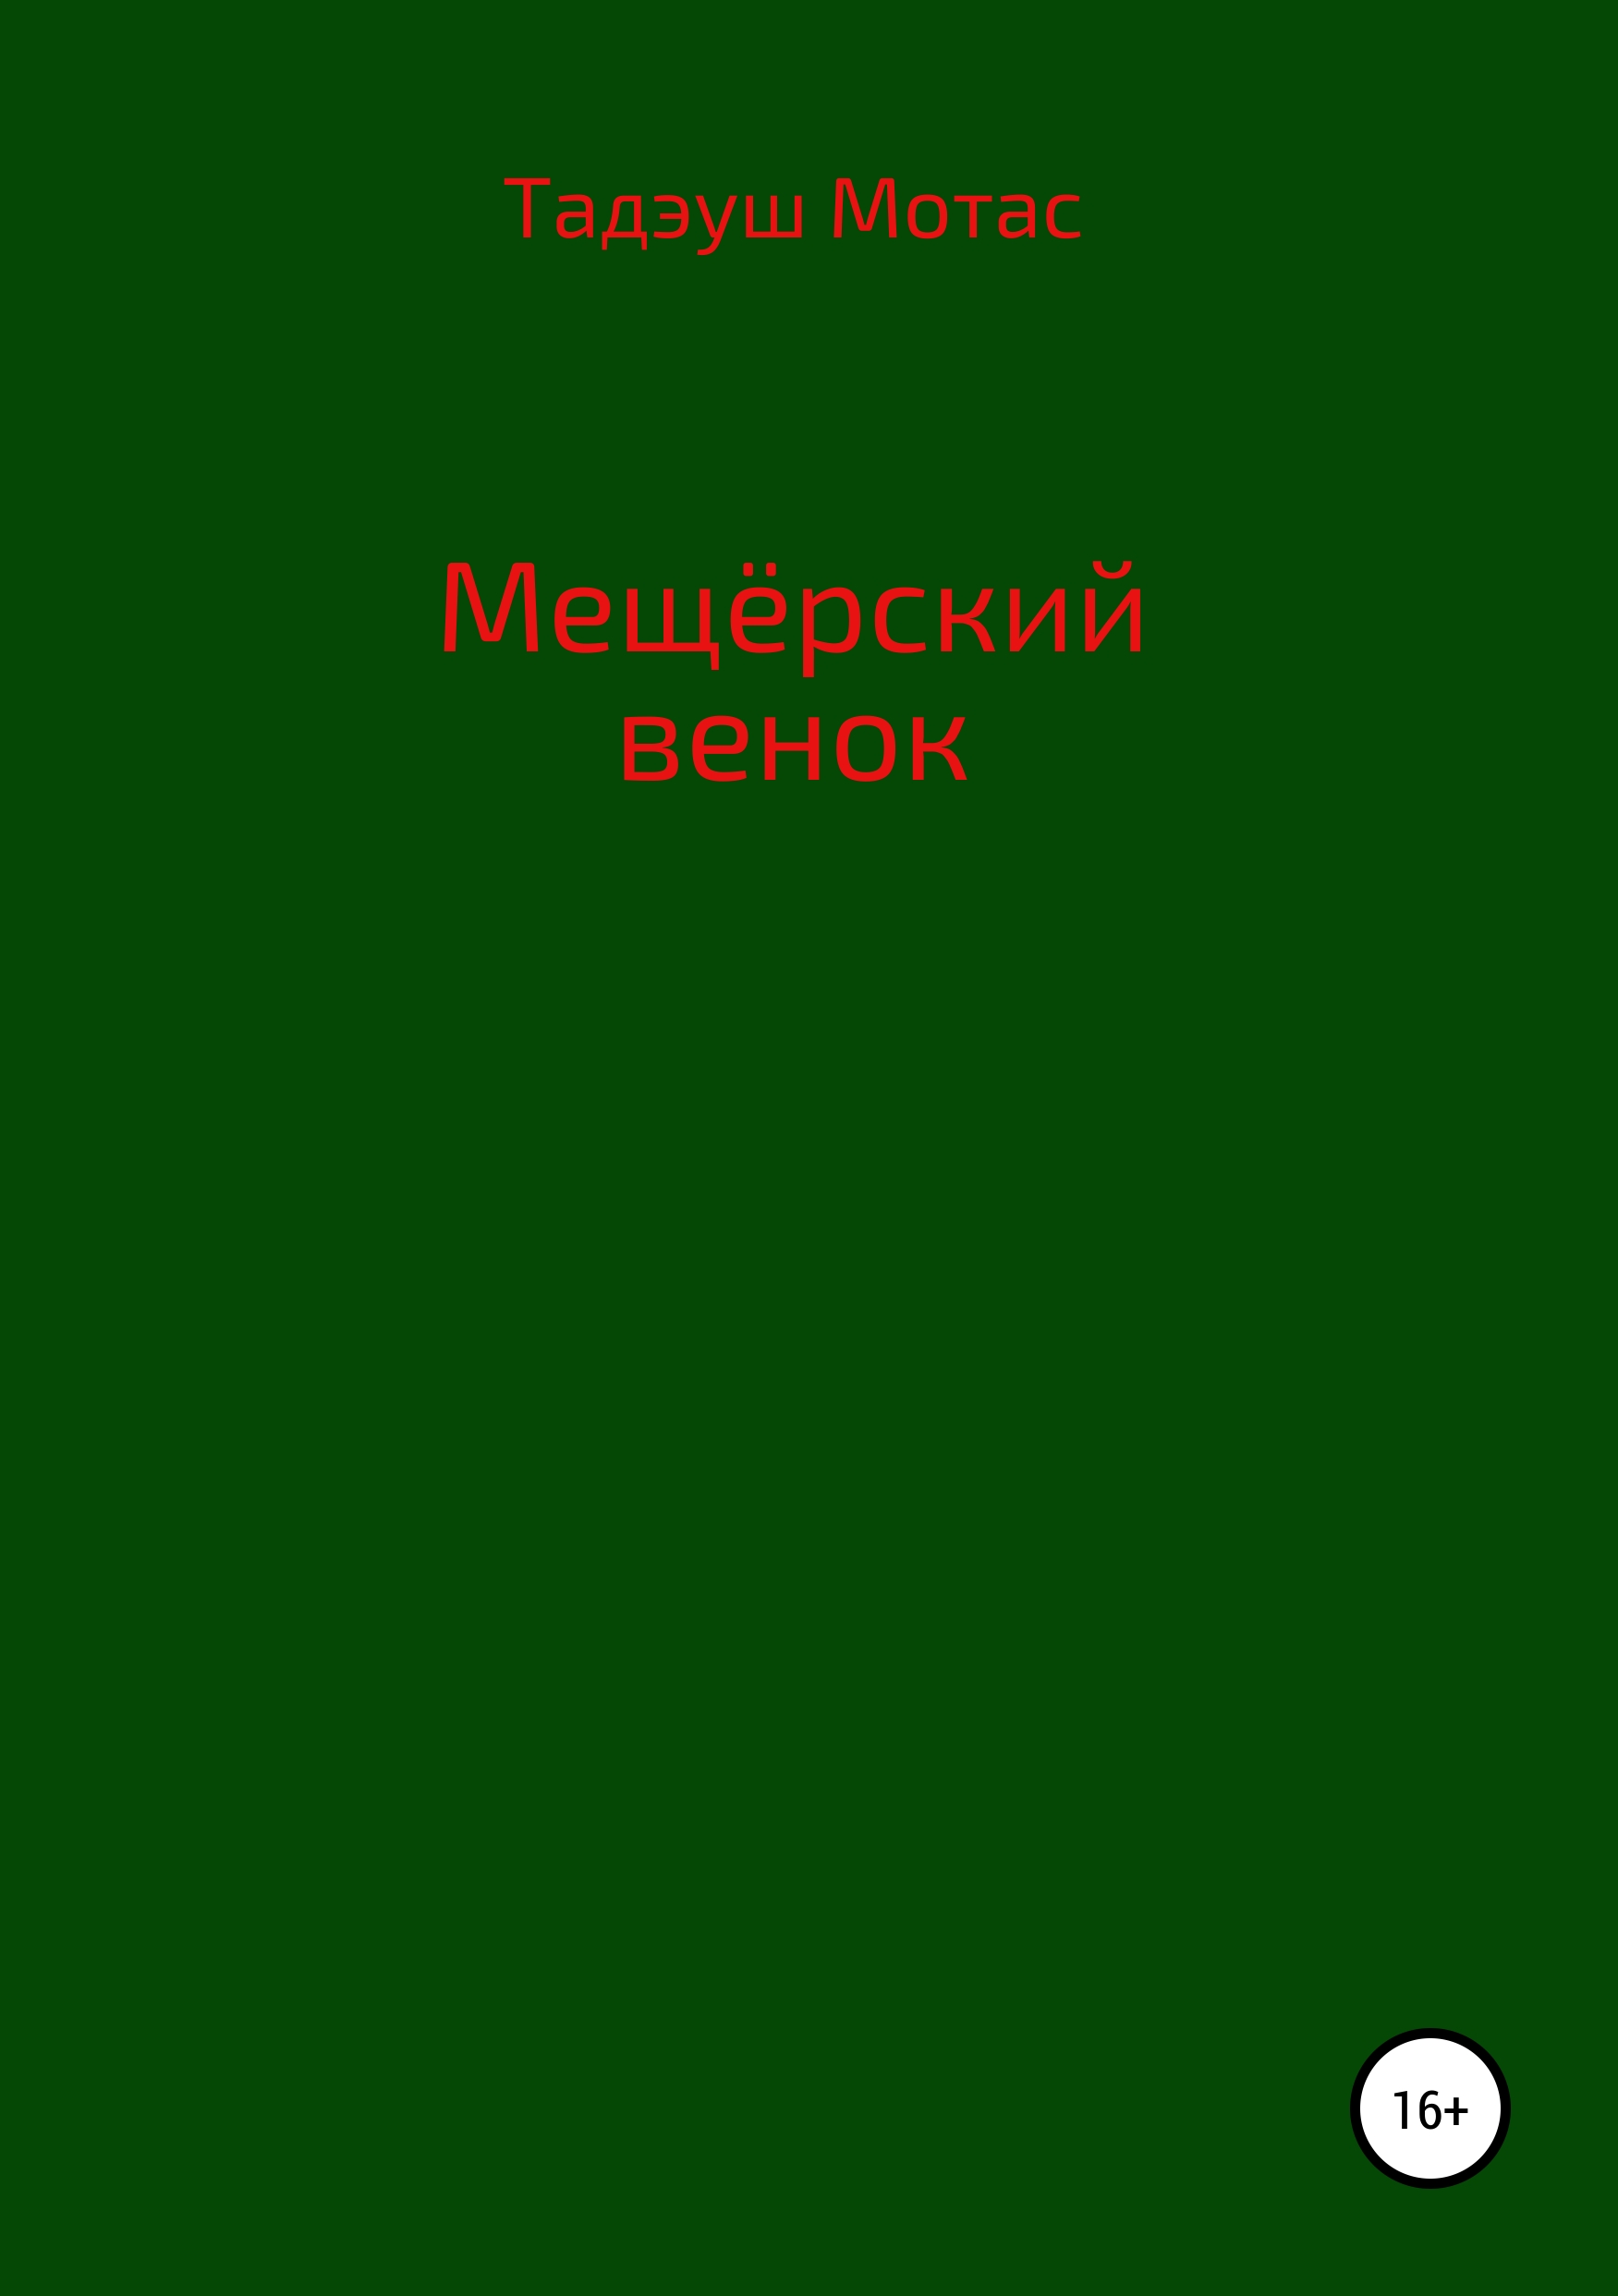 Книга Мещерский венок из серии , созданная Тадэуш Мотас, может относится к жанру Современная русская литература, Публицистика: прочее, Поэзия. Стоимость электронной книги Мещерский венок с идентификатором 43859946 составляет 49.90 руб.